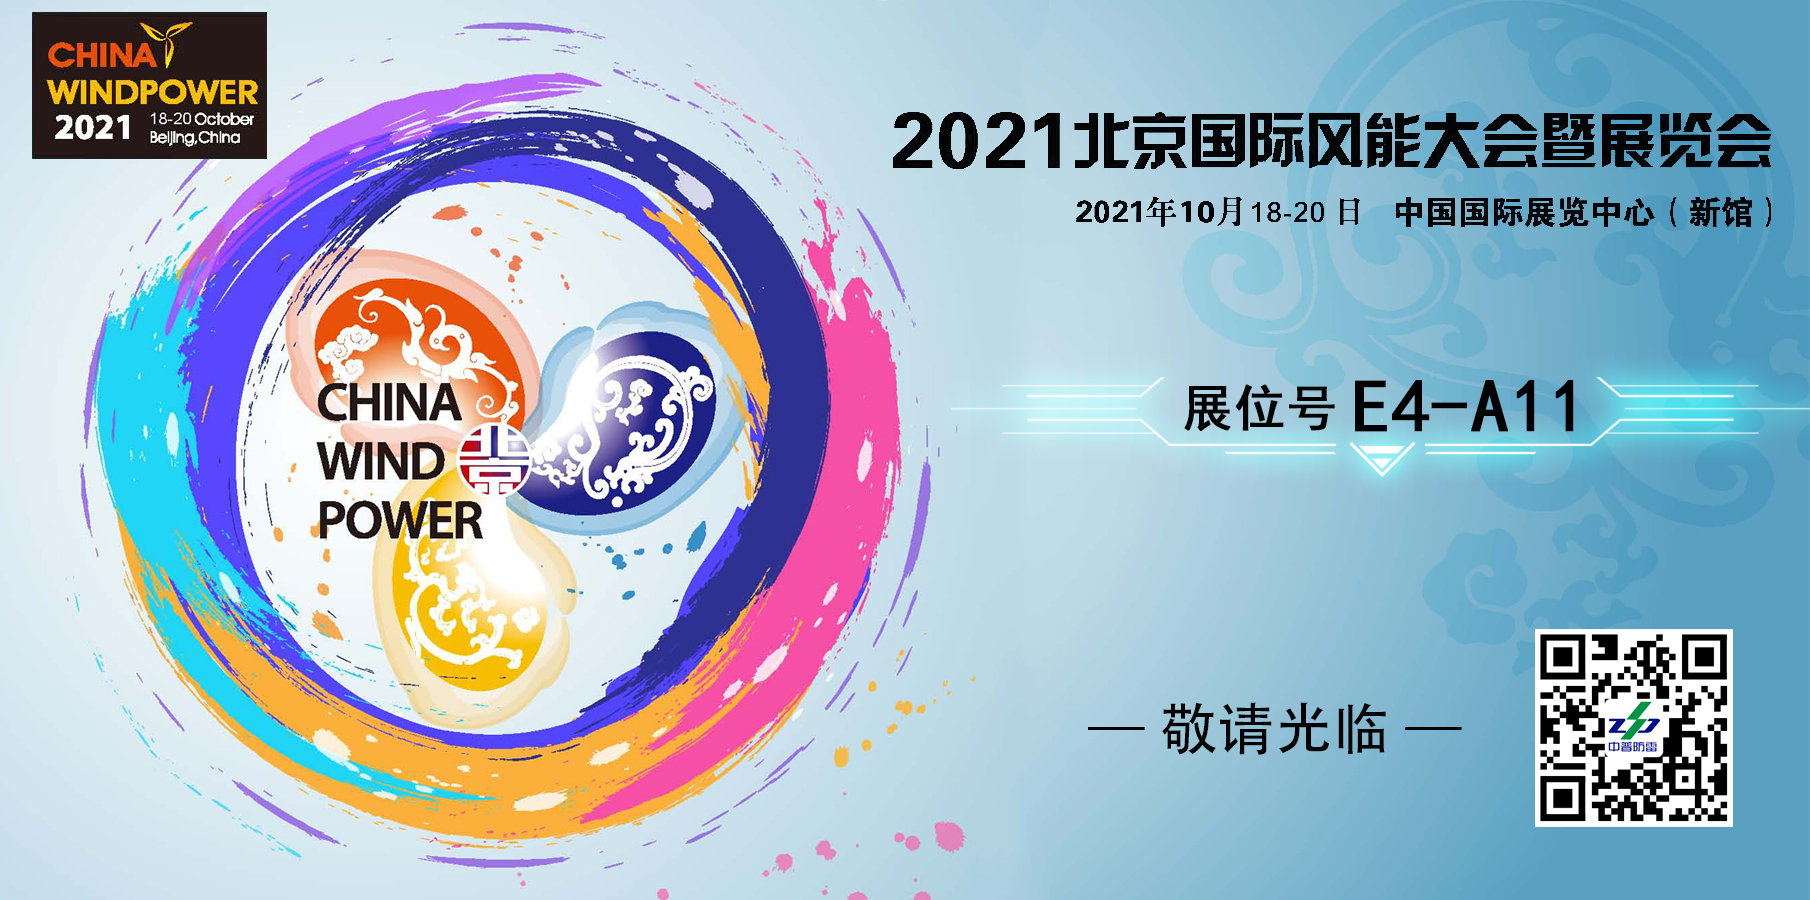 中普技术参加2021年北京国际风能展 10月18-20日 展位号E4-A11